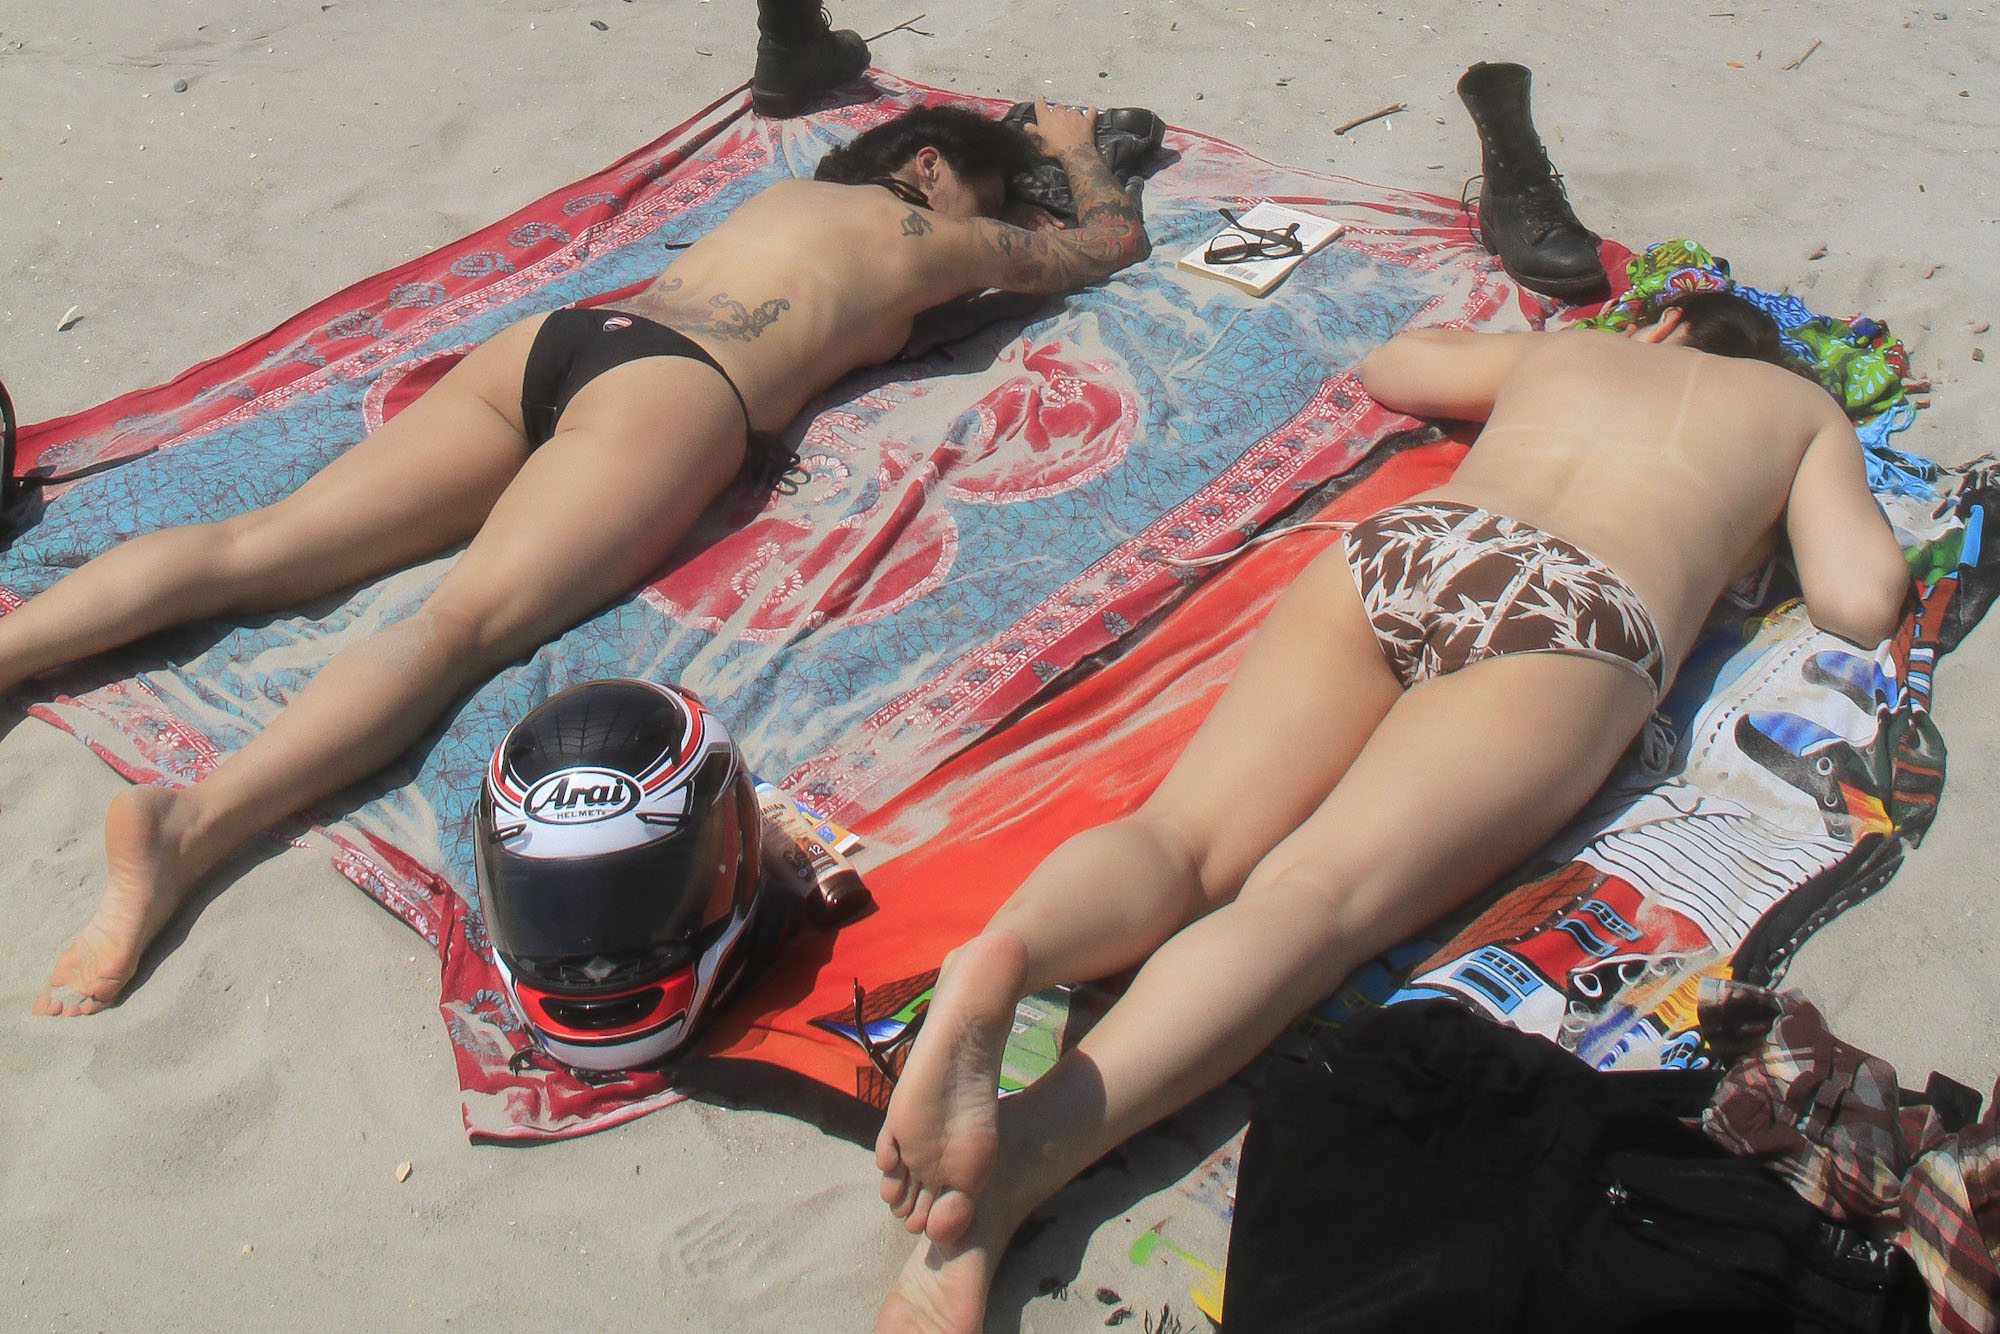 bill gilroy recommends Topless Beach Pix